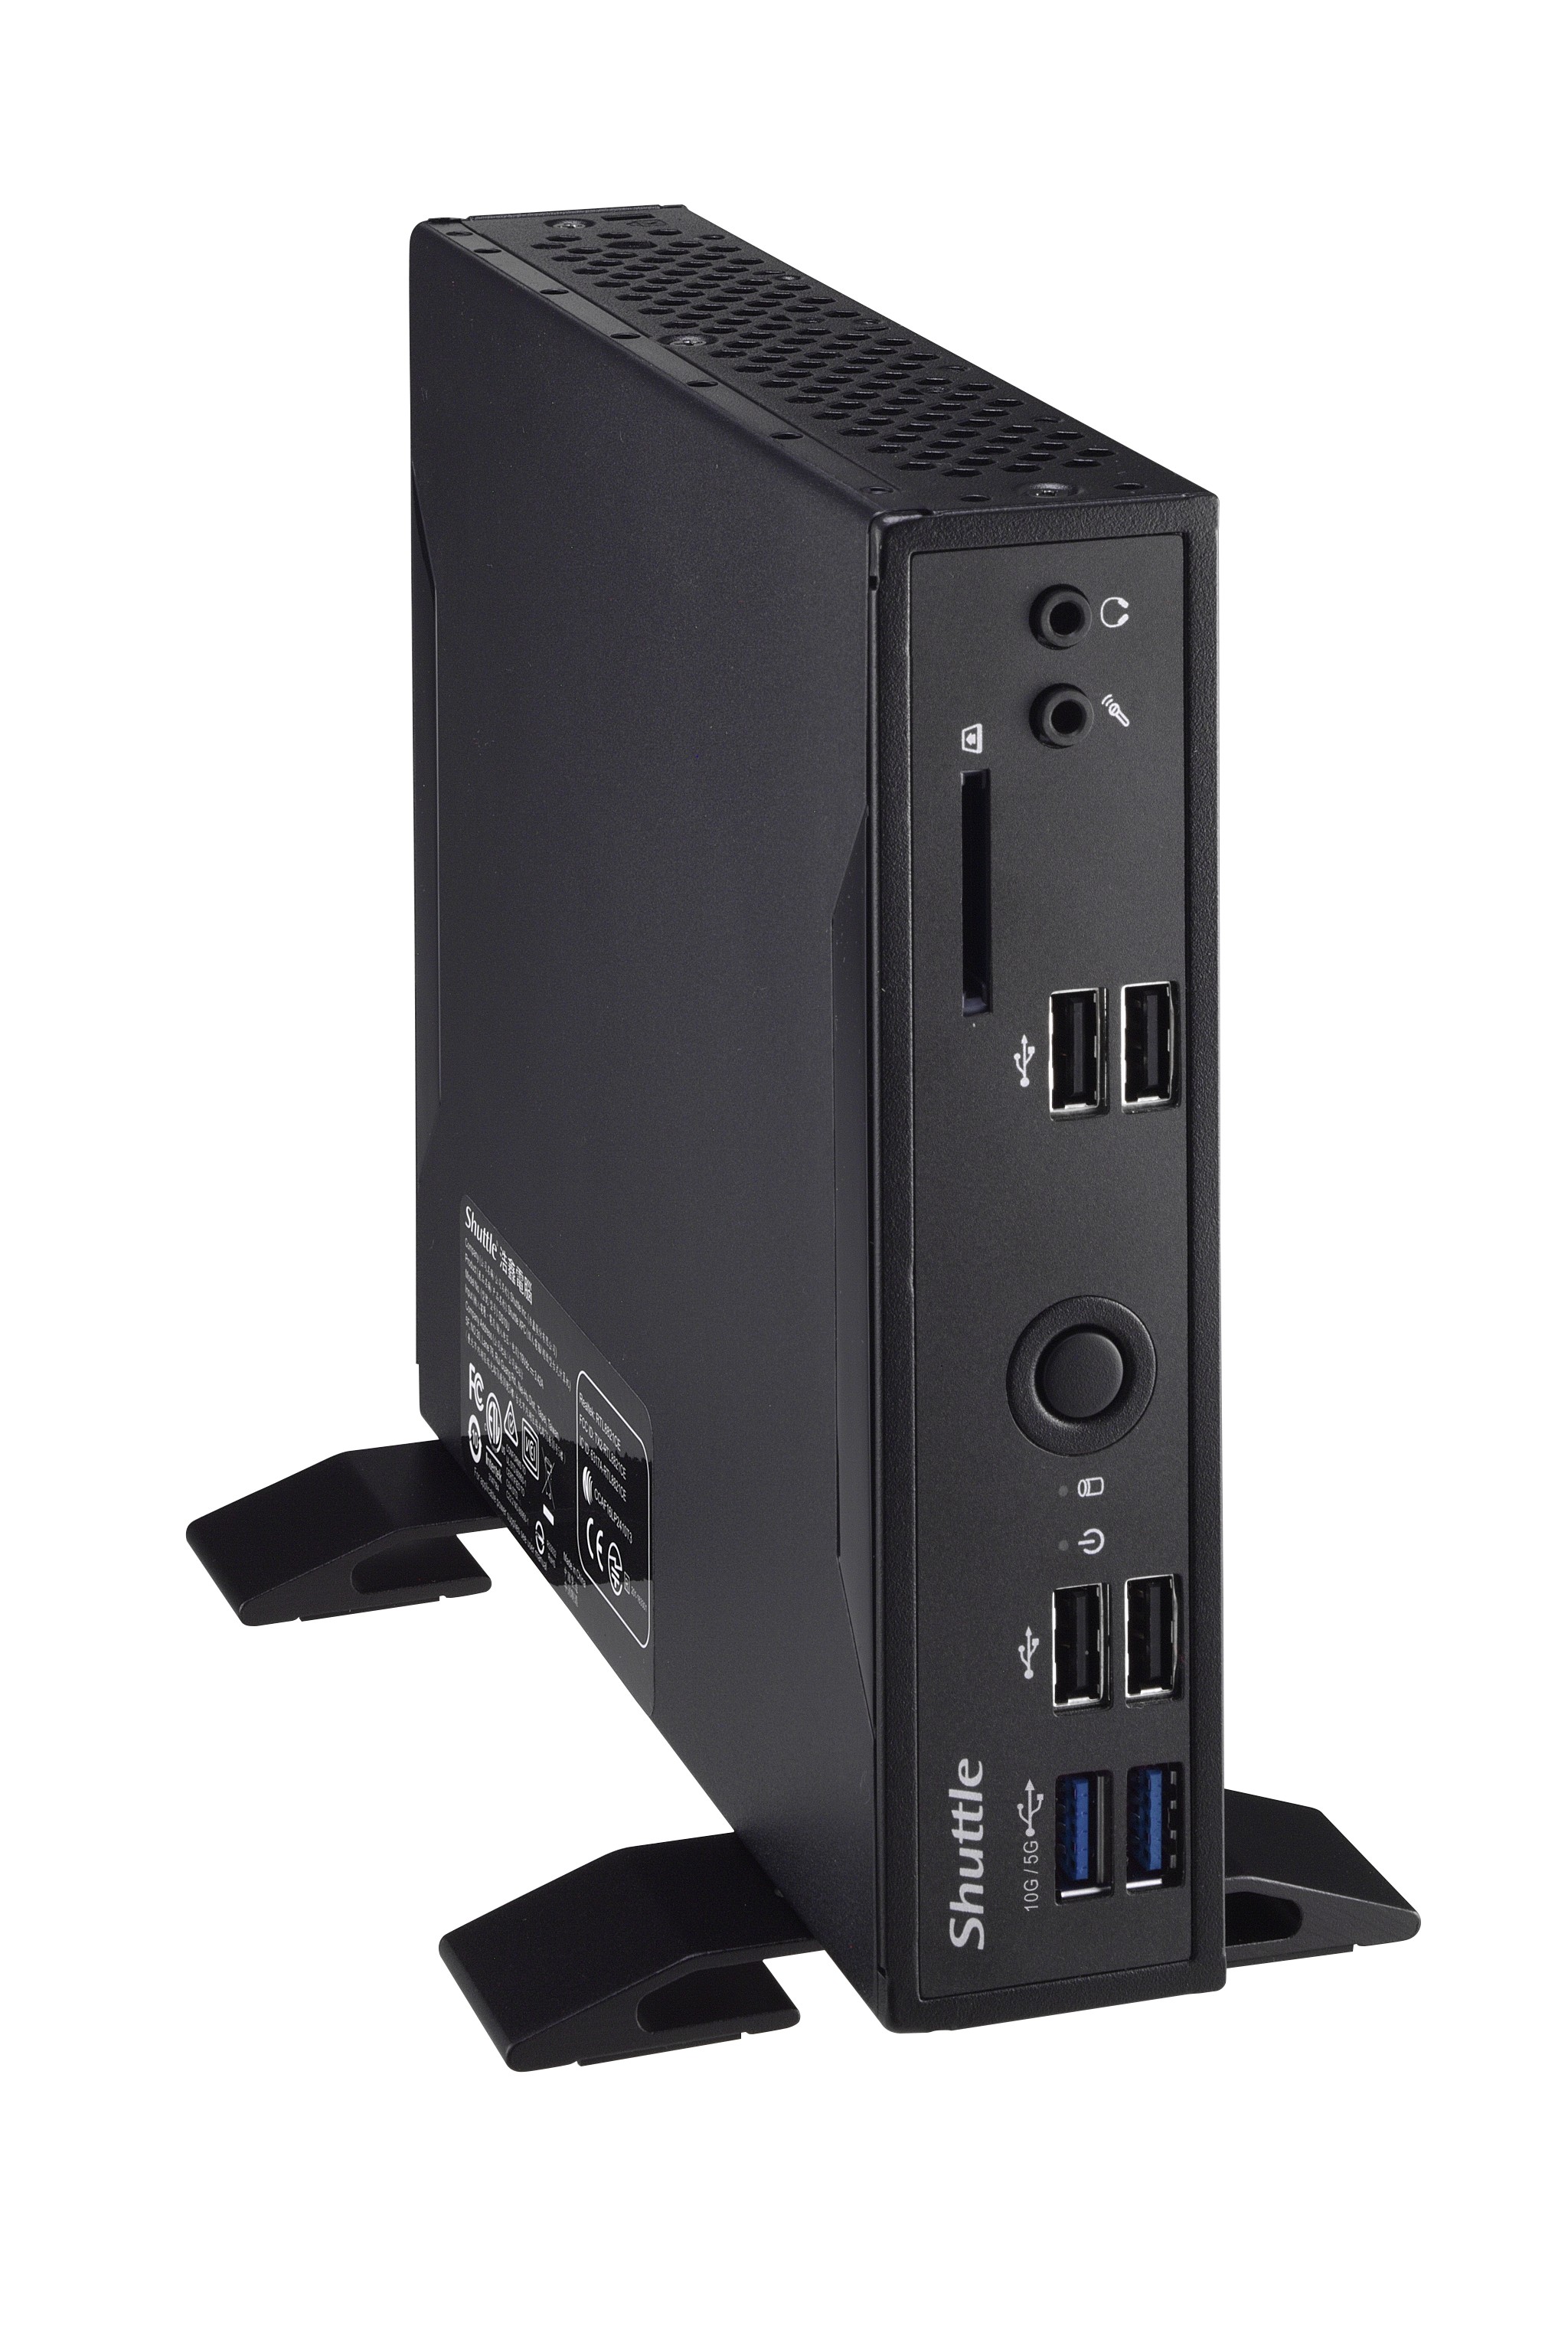 Barebones de Mini PC con 4 niveles de potencia: Shuttle DS20 Series